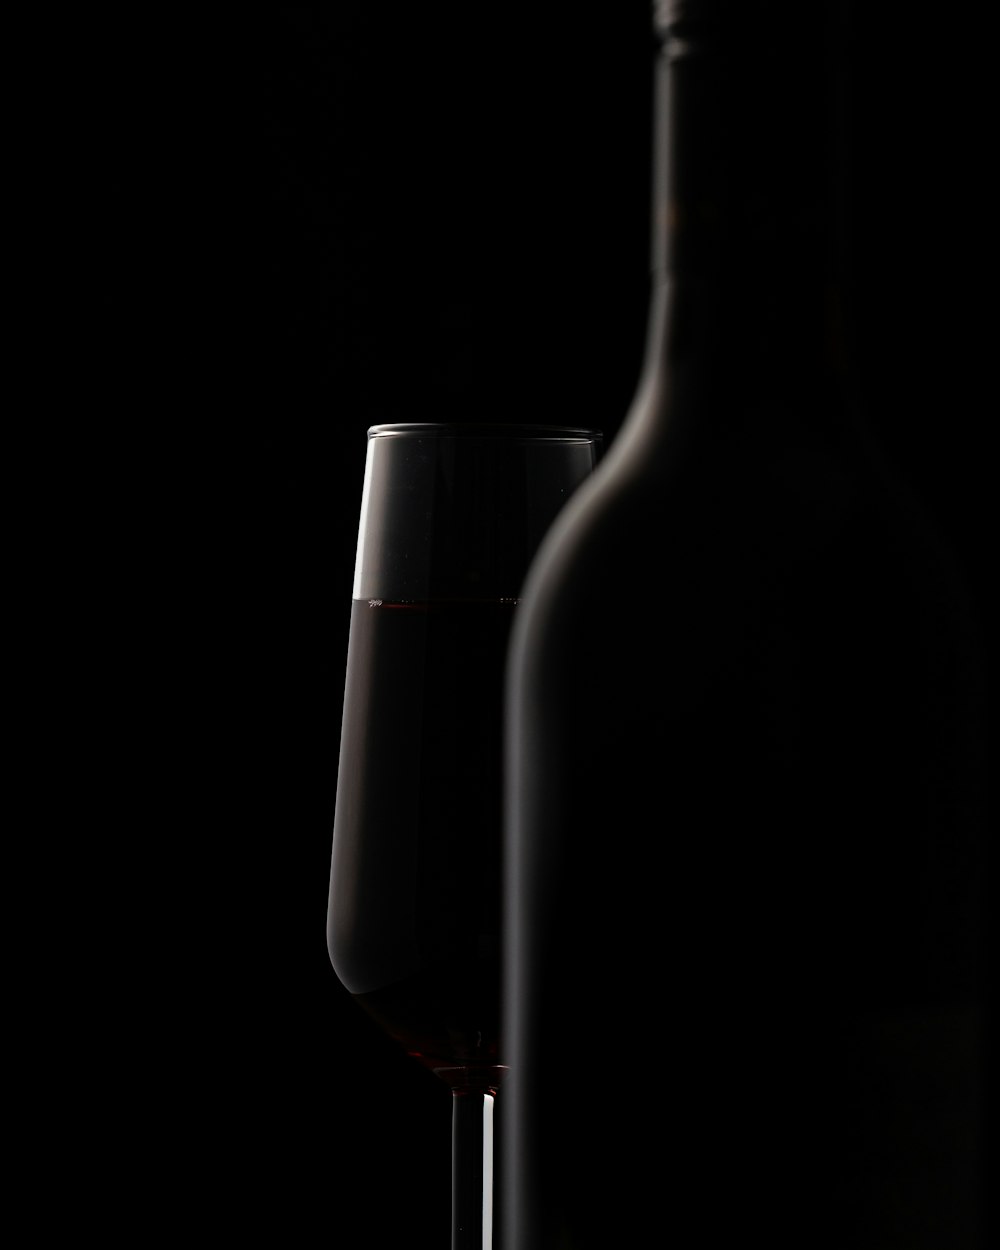 Weinglas hinter der Flasche